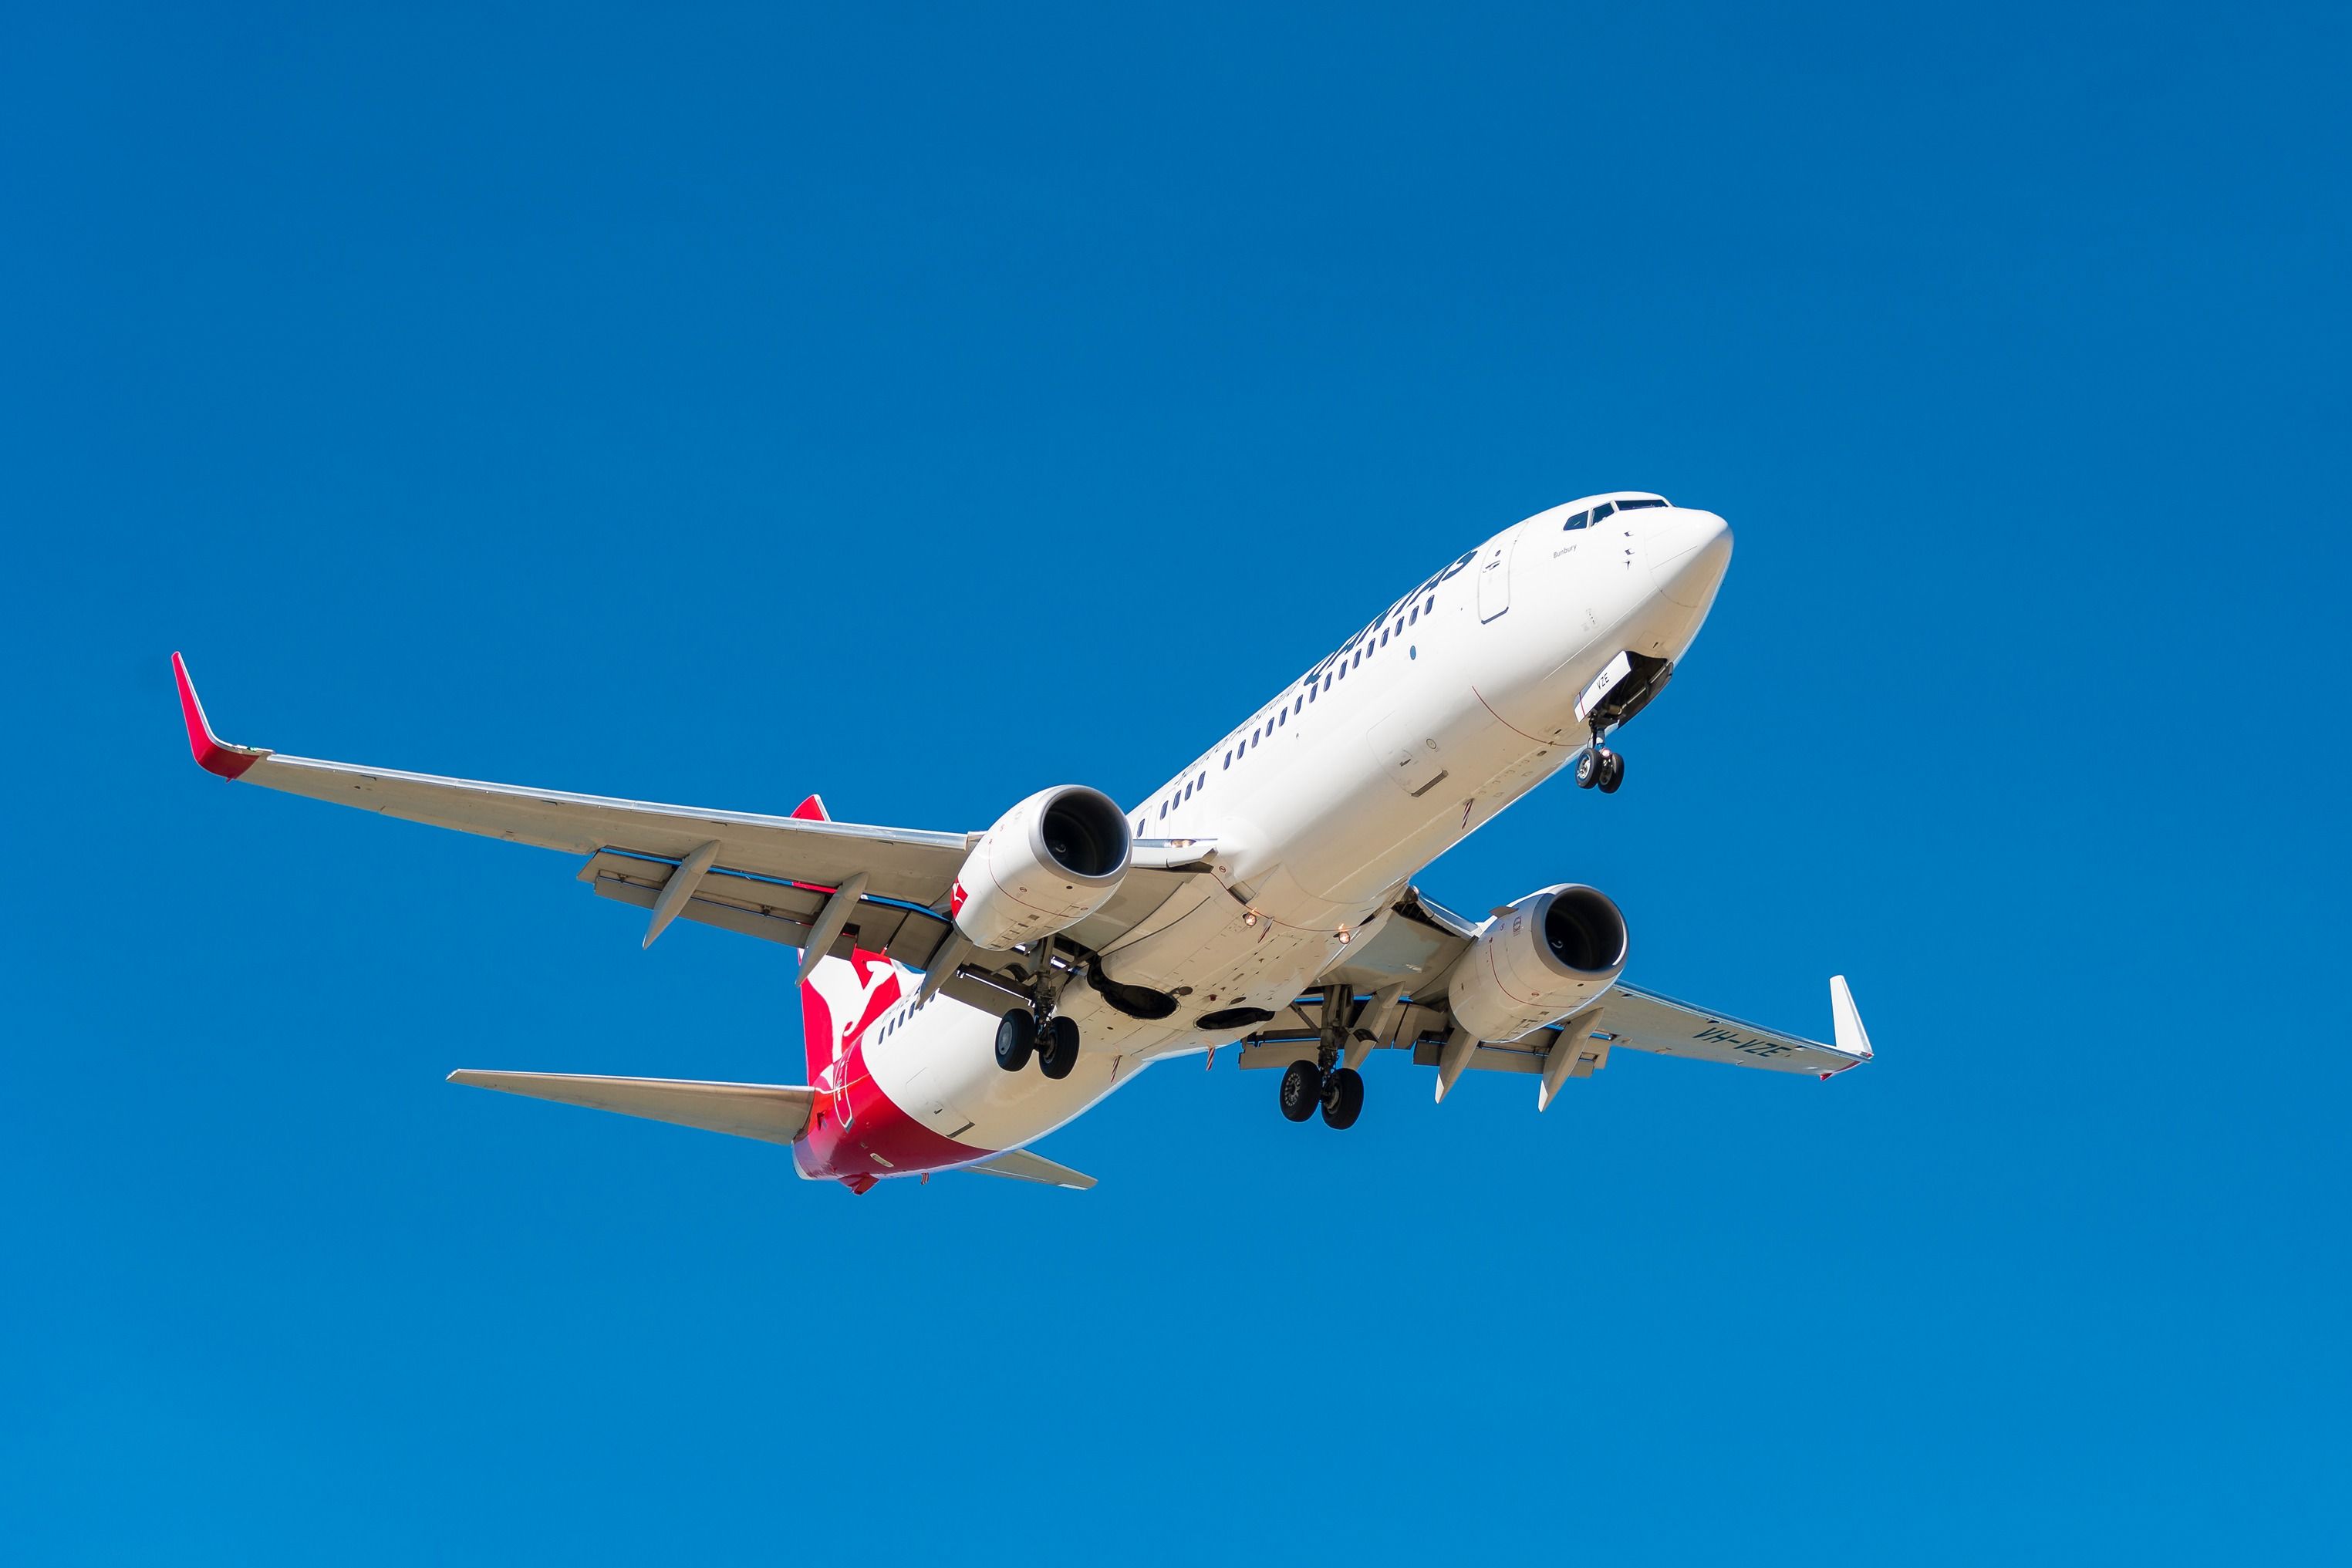 Qantas Boeing 737-800 landing